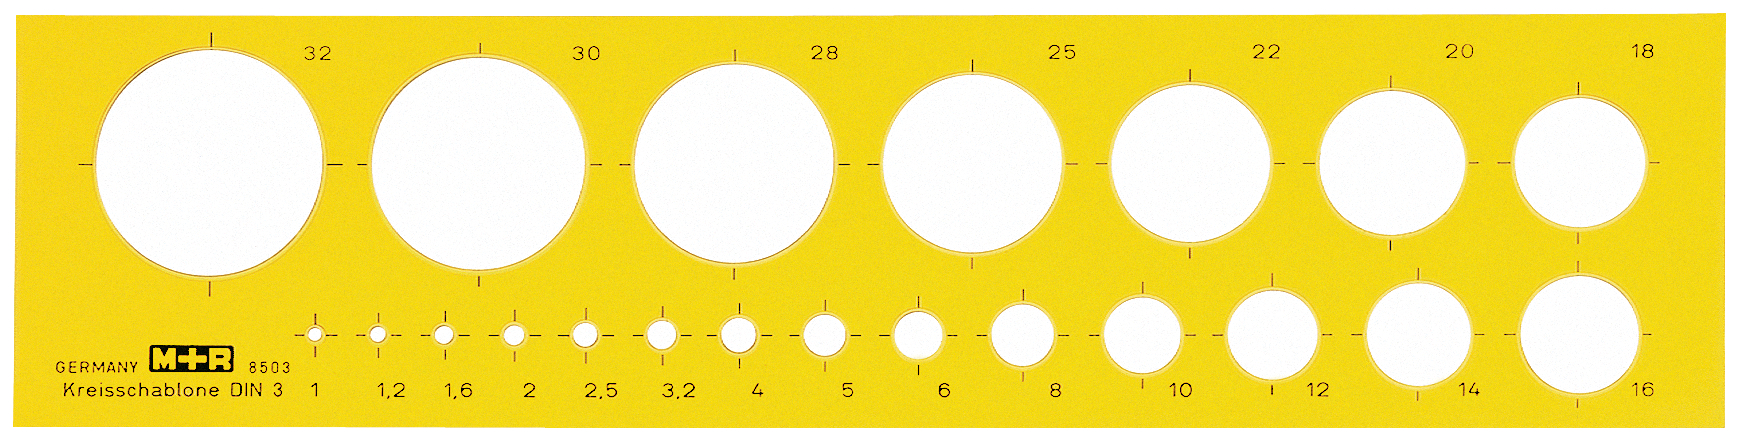 M+R Calibre circulaire 1-32mm 85030670 jaune-transparent jaune-transparent